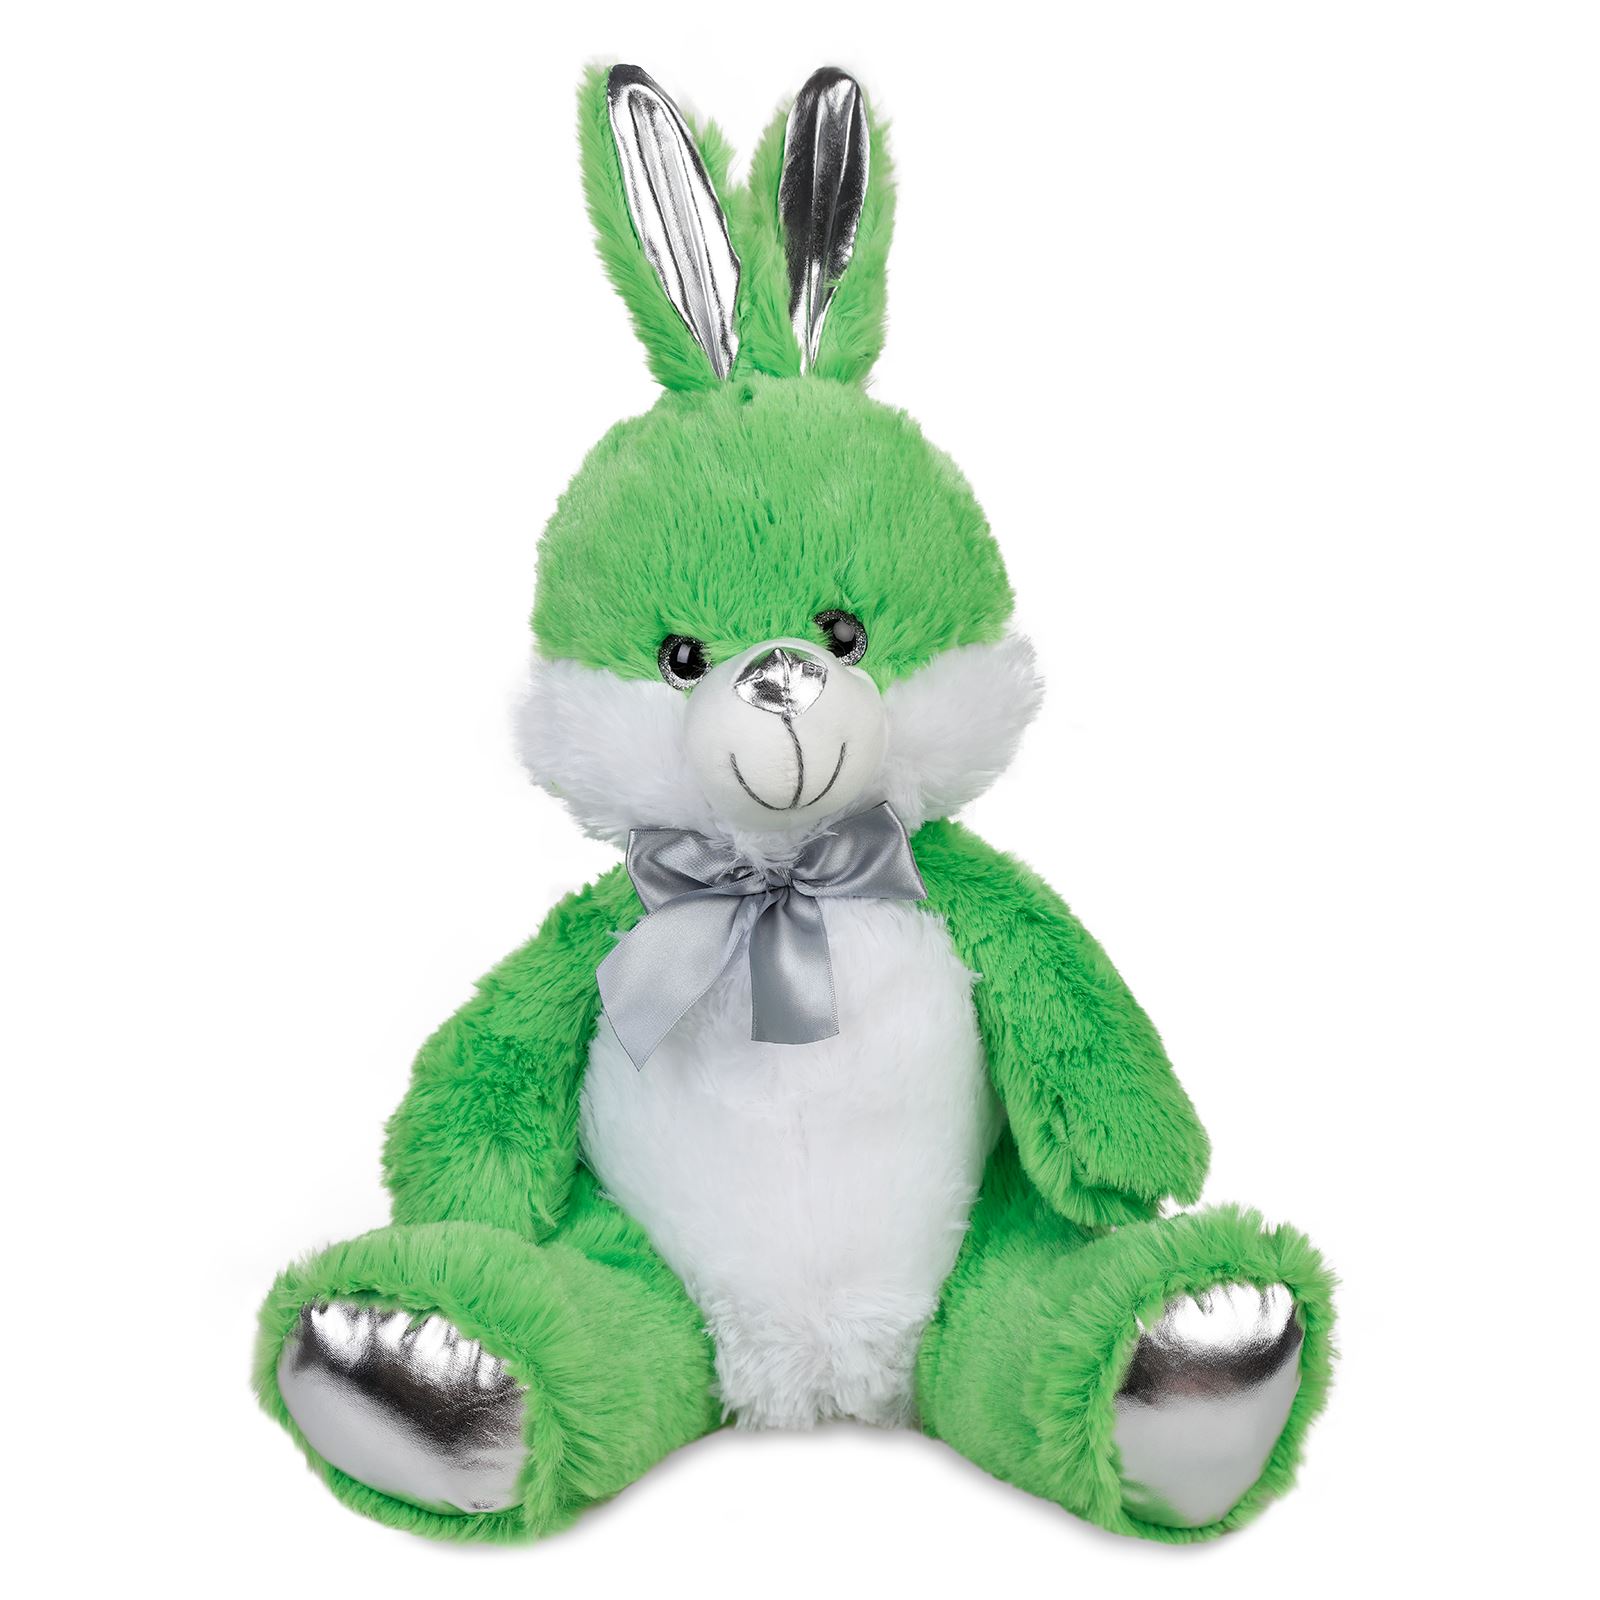 Halley Oyuncak Peluş Tavşan 40 cm Yeşil